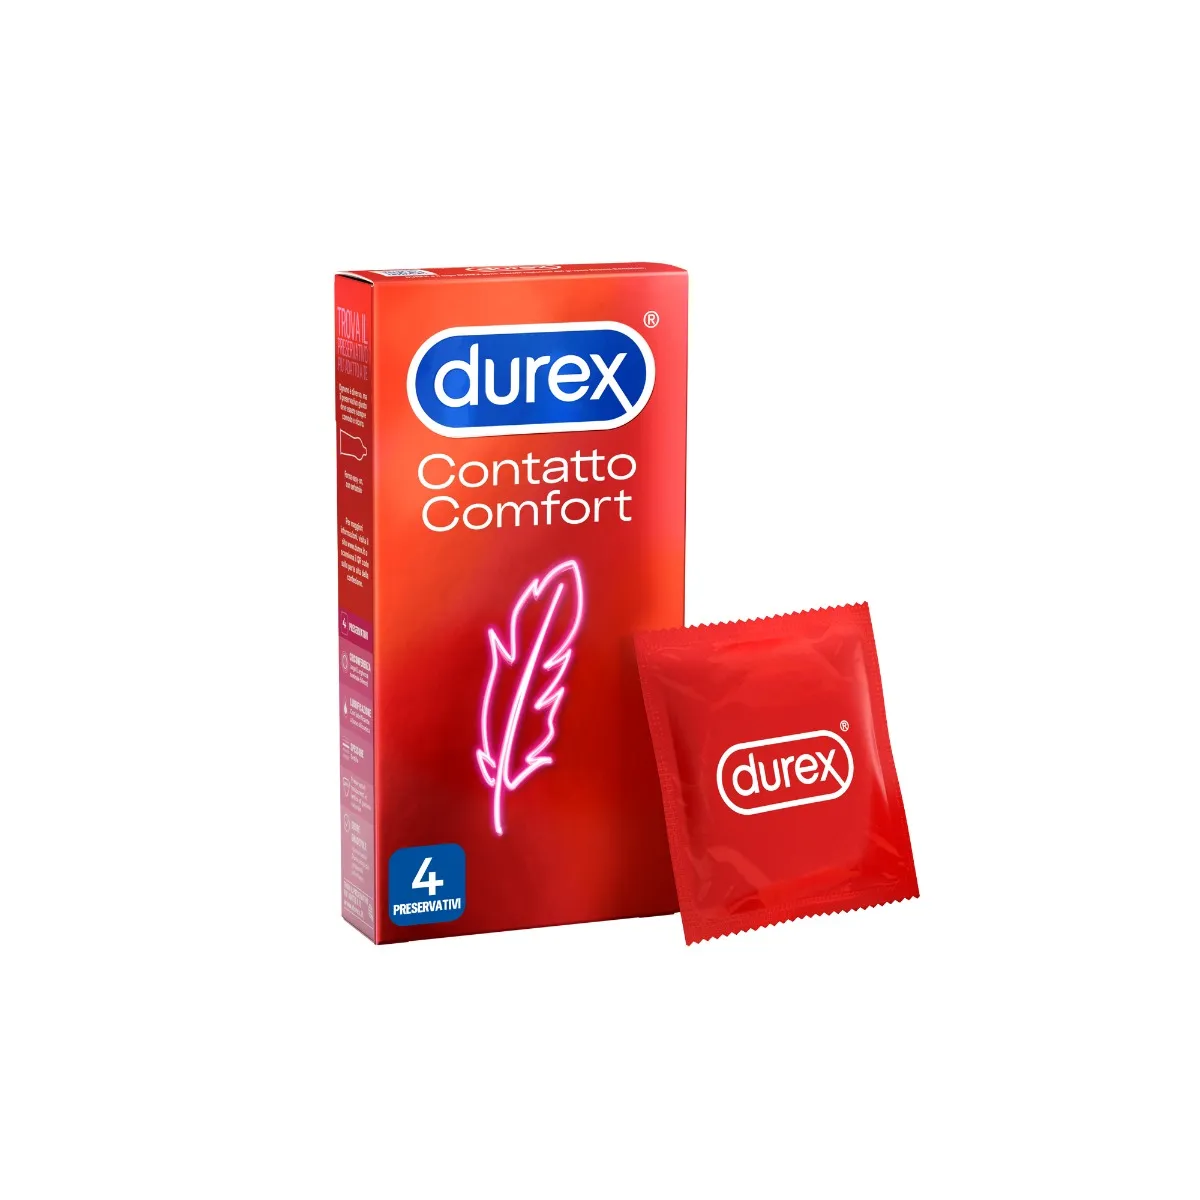 Durex Contatto Comfort Profilattici Sottili 4 Pezzi Elevata Lubrificazione